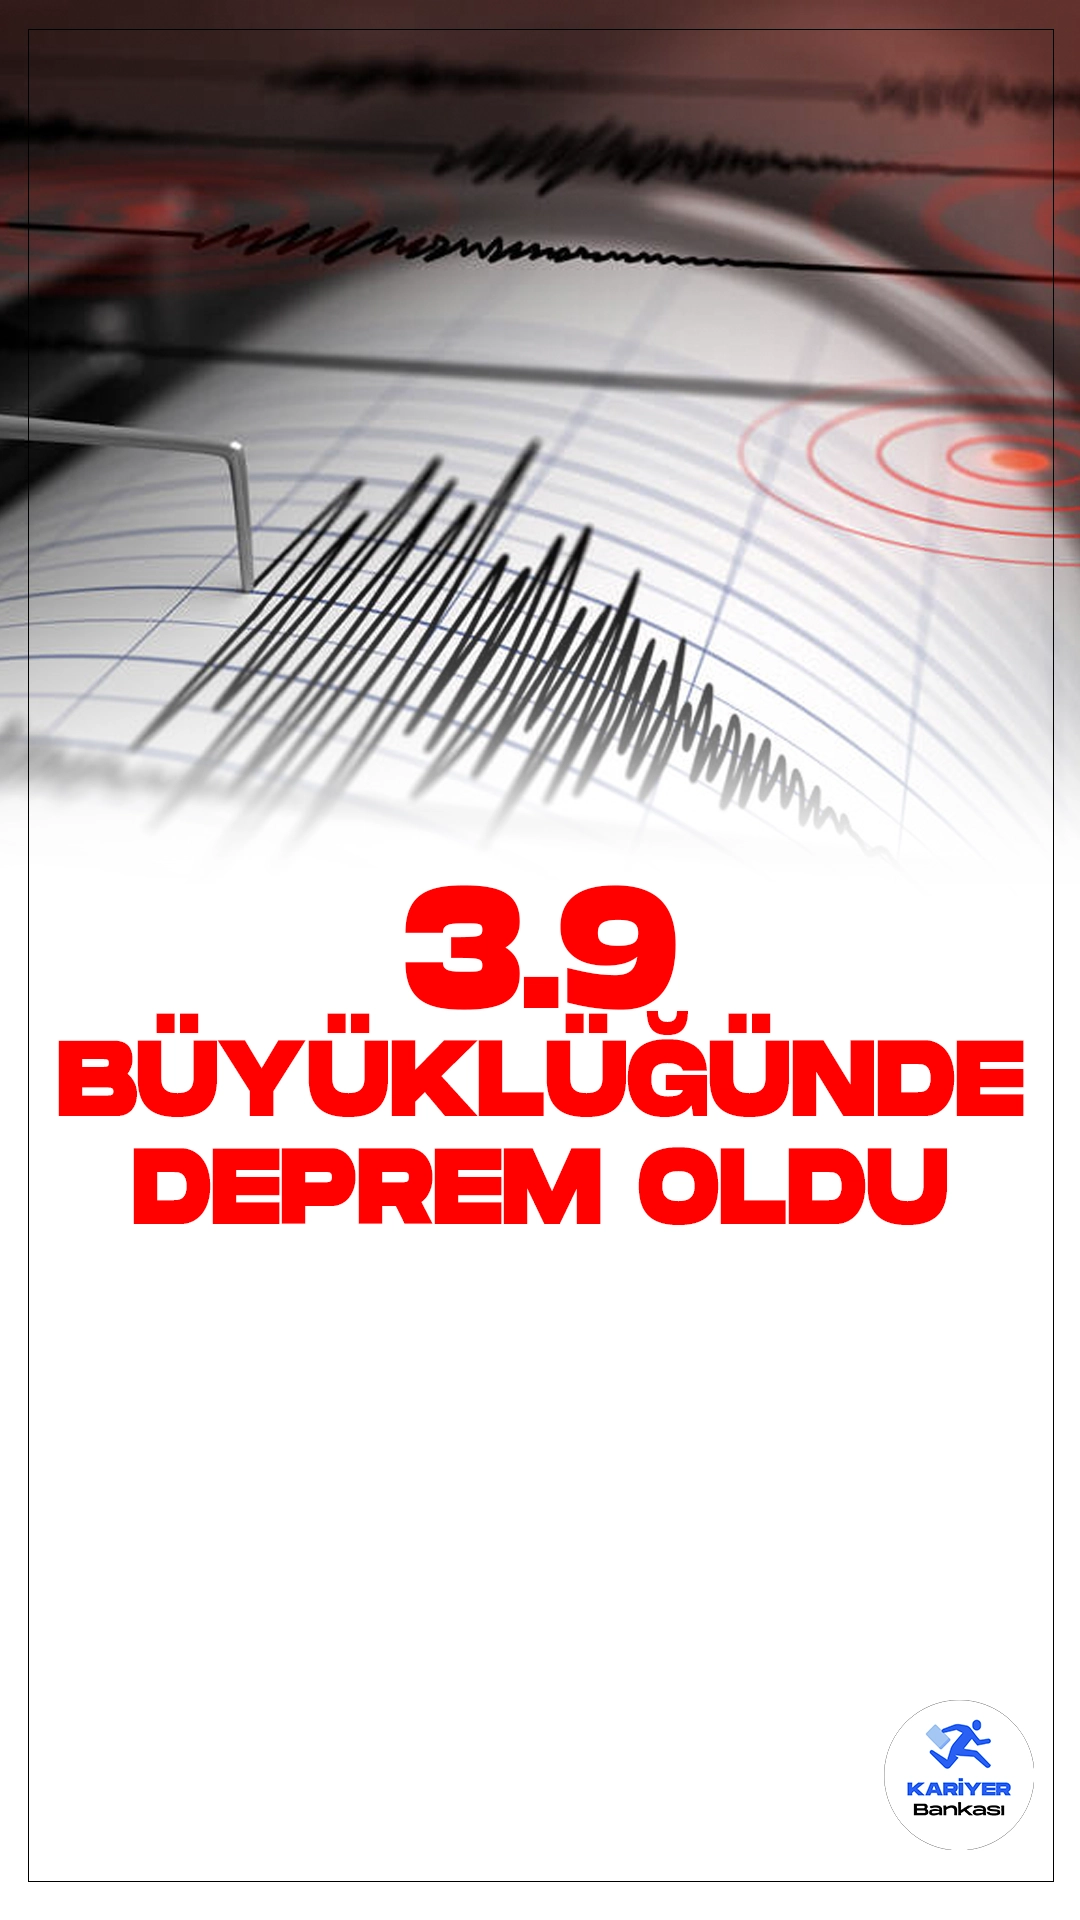 Muğla'da 3.9 Büyüklüğünde Deprem OIdu. İçişleri Bakanlığı Afet ve Acil Durum Yönetimi Başkanlığı Deprem Dairesi tarafından yayımlana son dakika verilerine göre, Muğla'nın Datça ilçesinde 3.9 büyüklüğünde deprem meydana geldi.